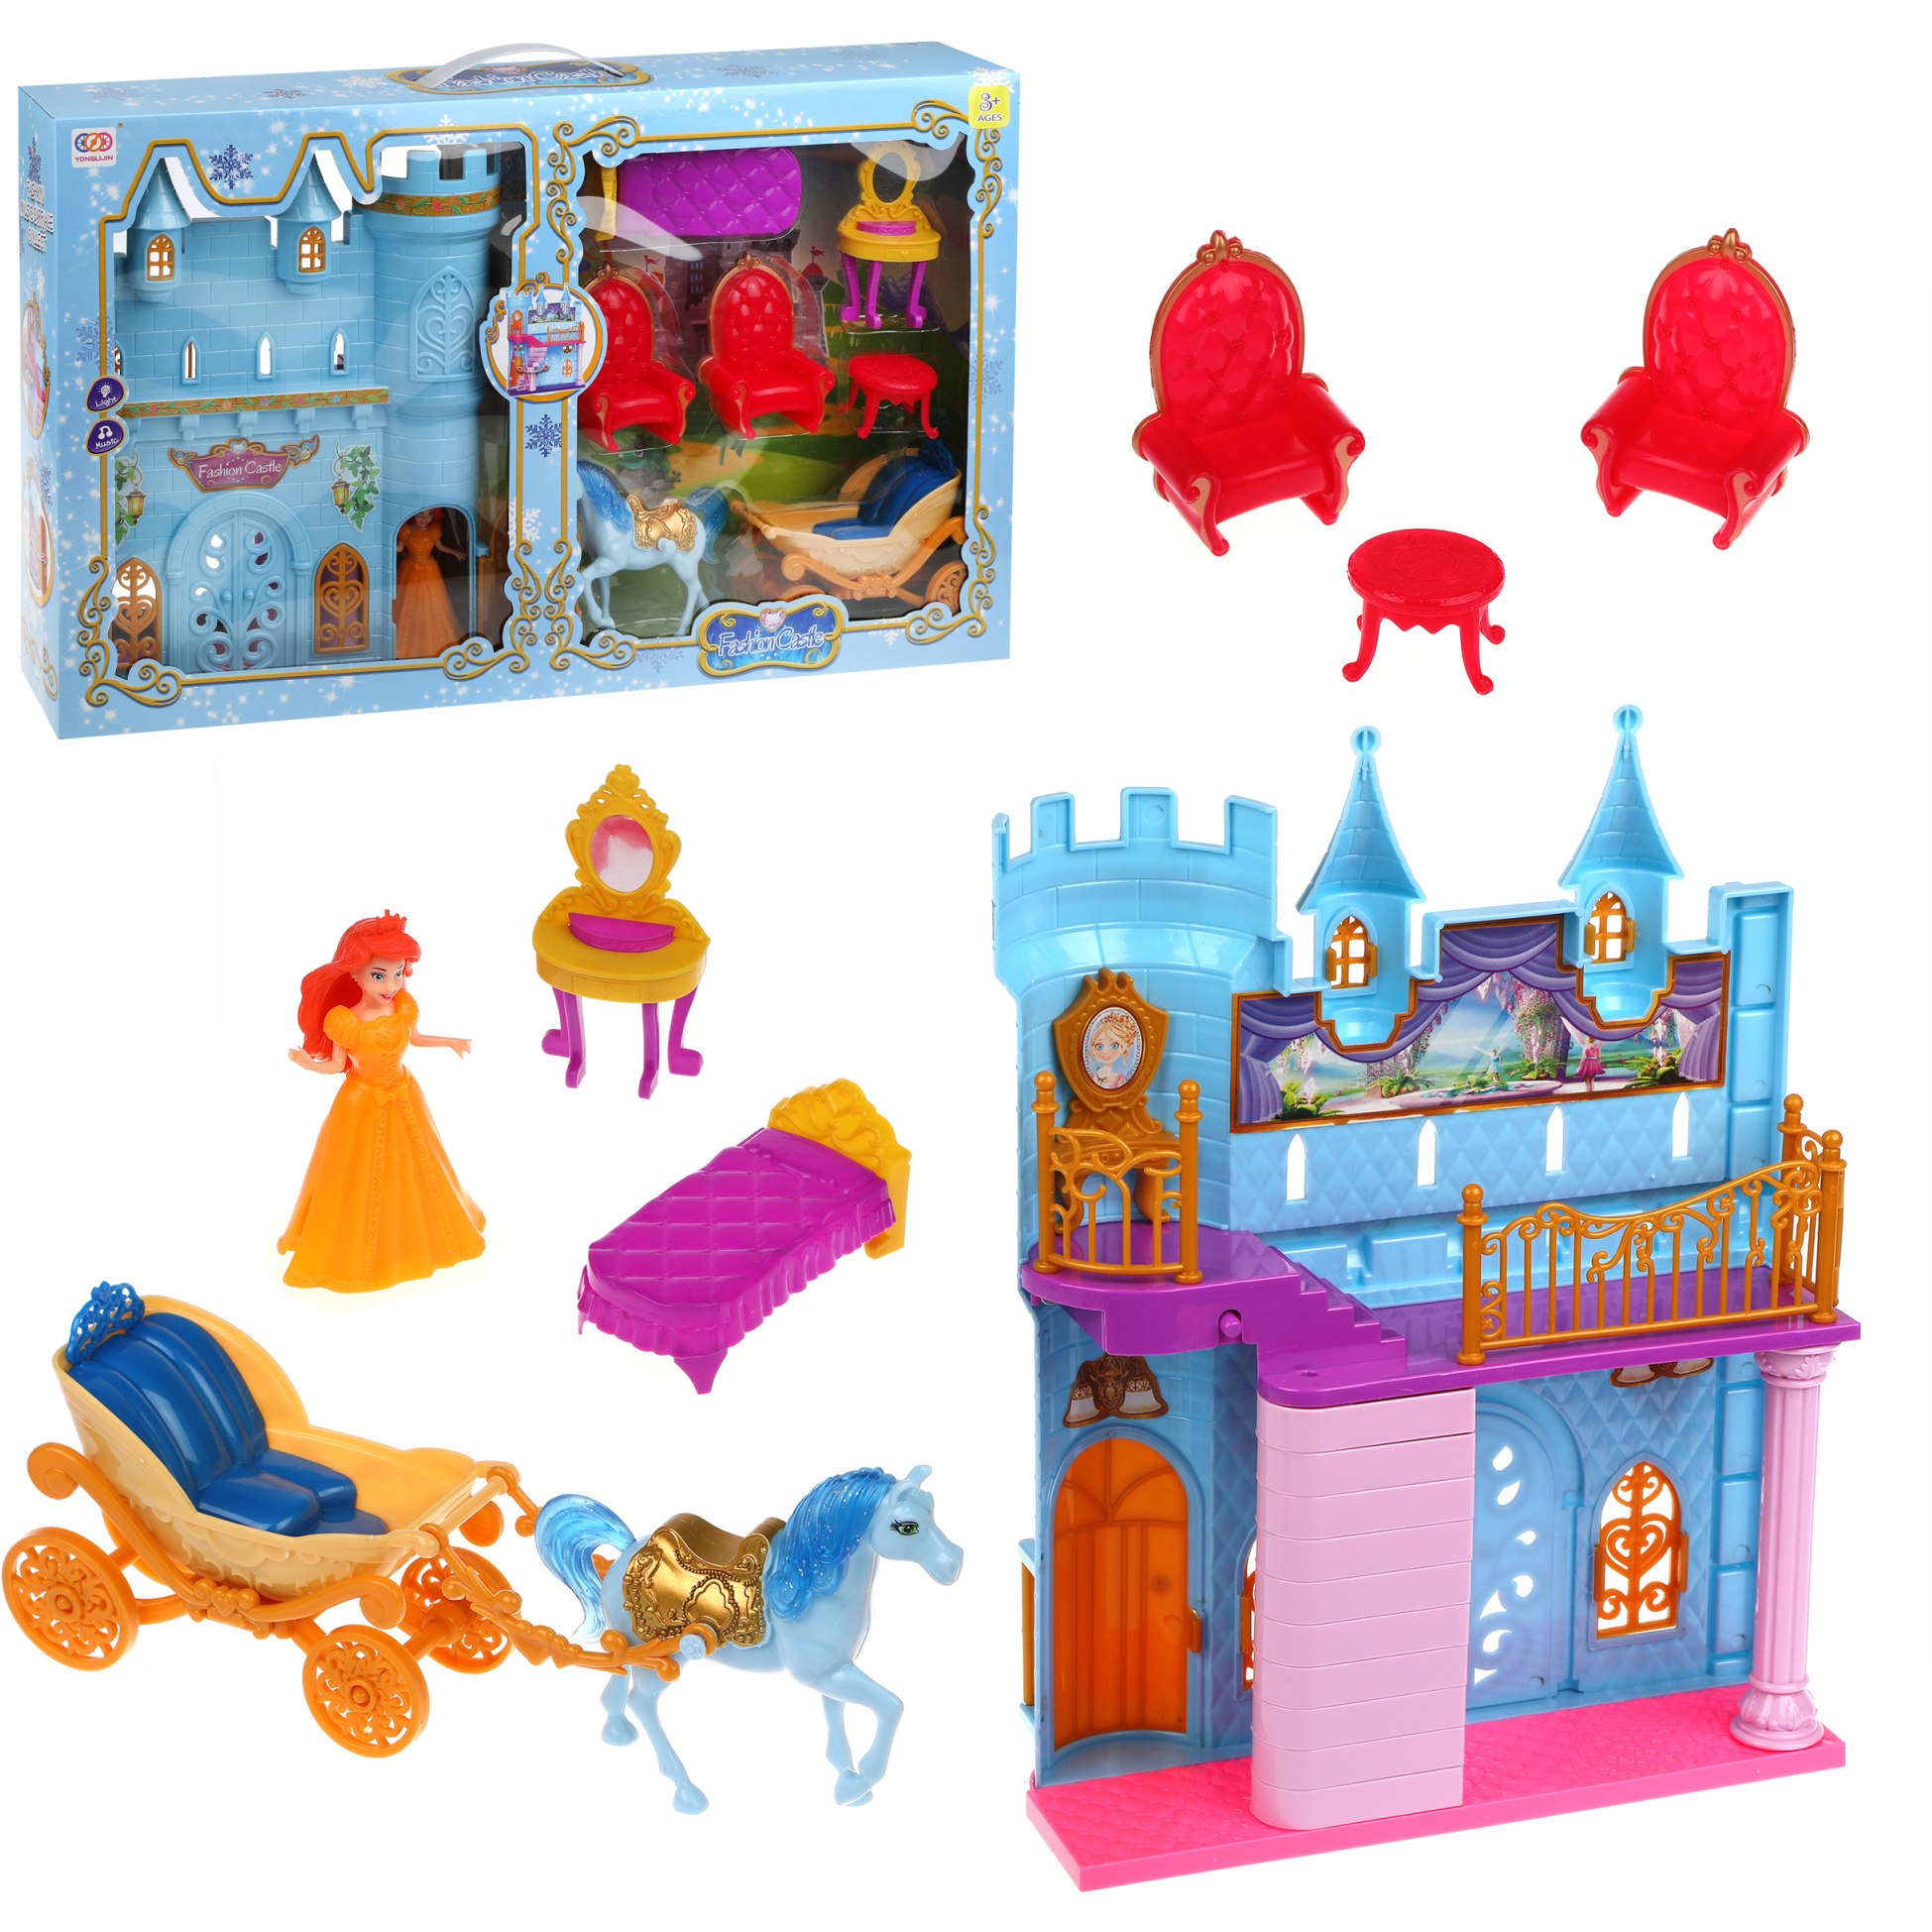 Игр. набор "замок", в компл. замок, карета, лошадь, принцесса, мебель 5шт., кор.